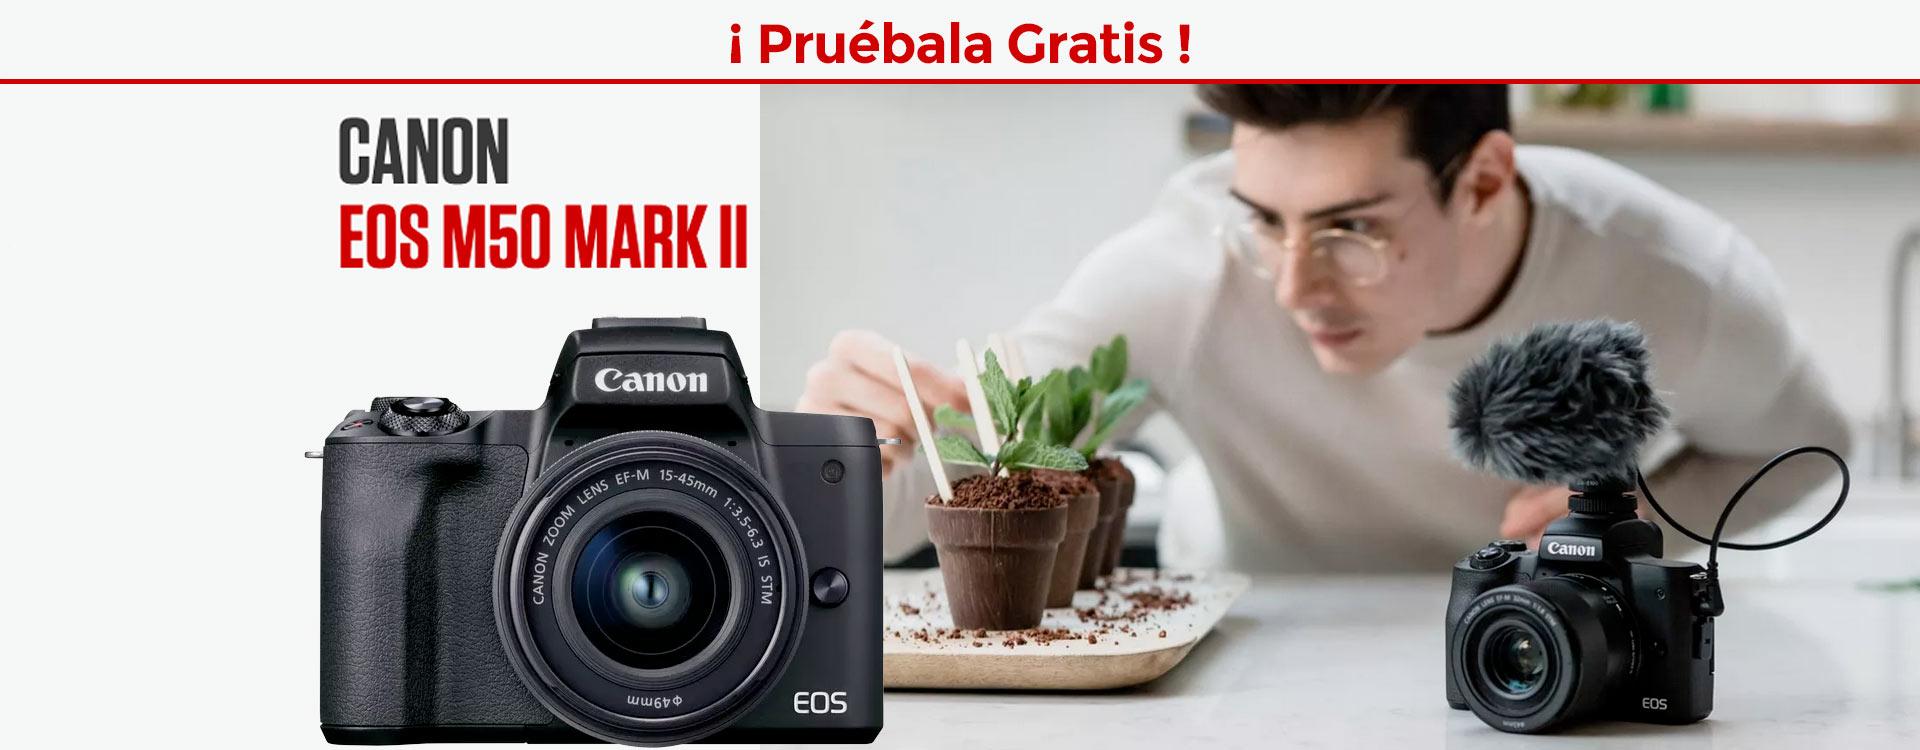 Canon EOS M50 Mark II: ¿Quieres probarla Gratis?